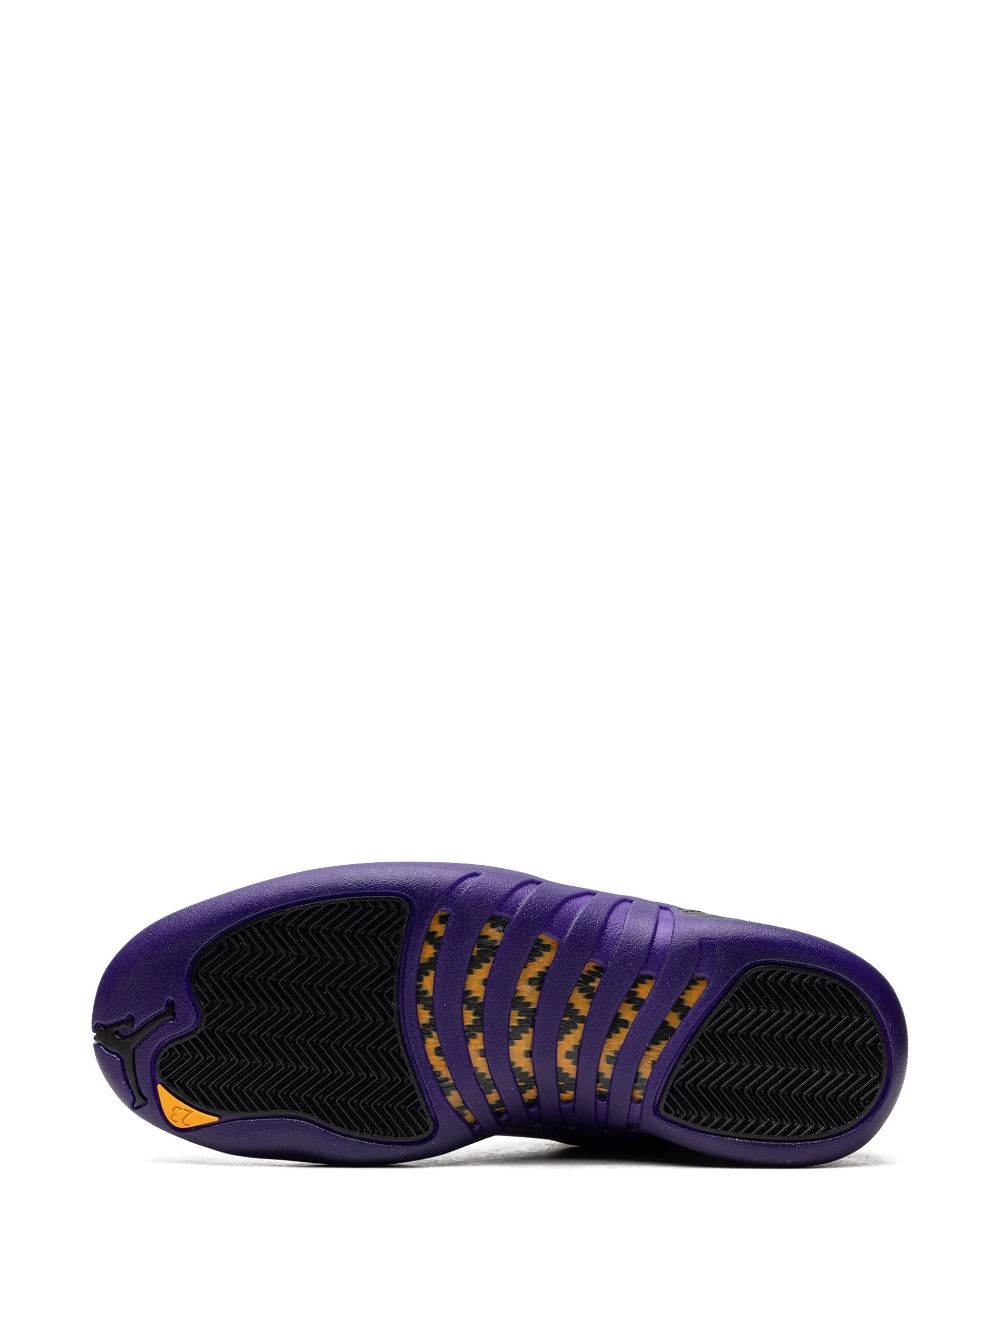 Air Jordan 12 "Field Purple" sneakers - 4